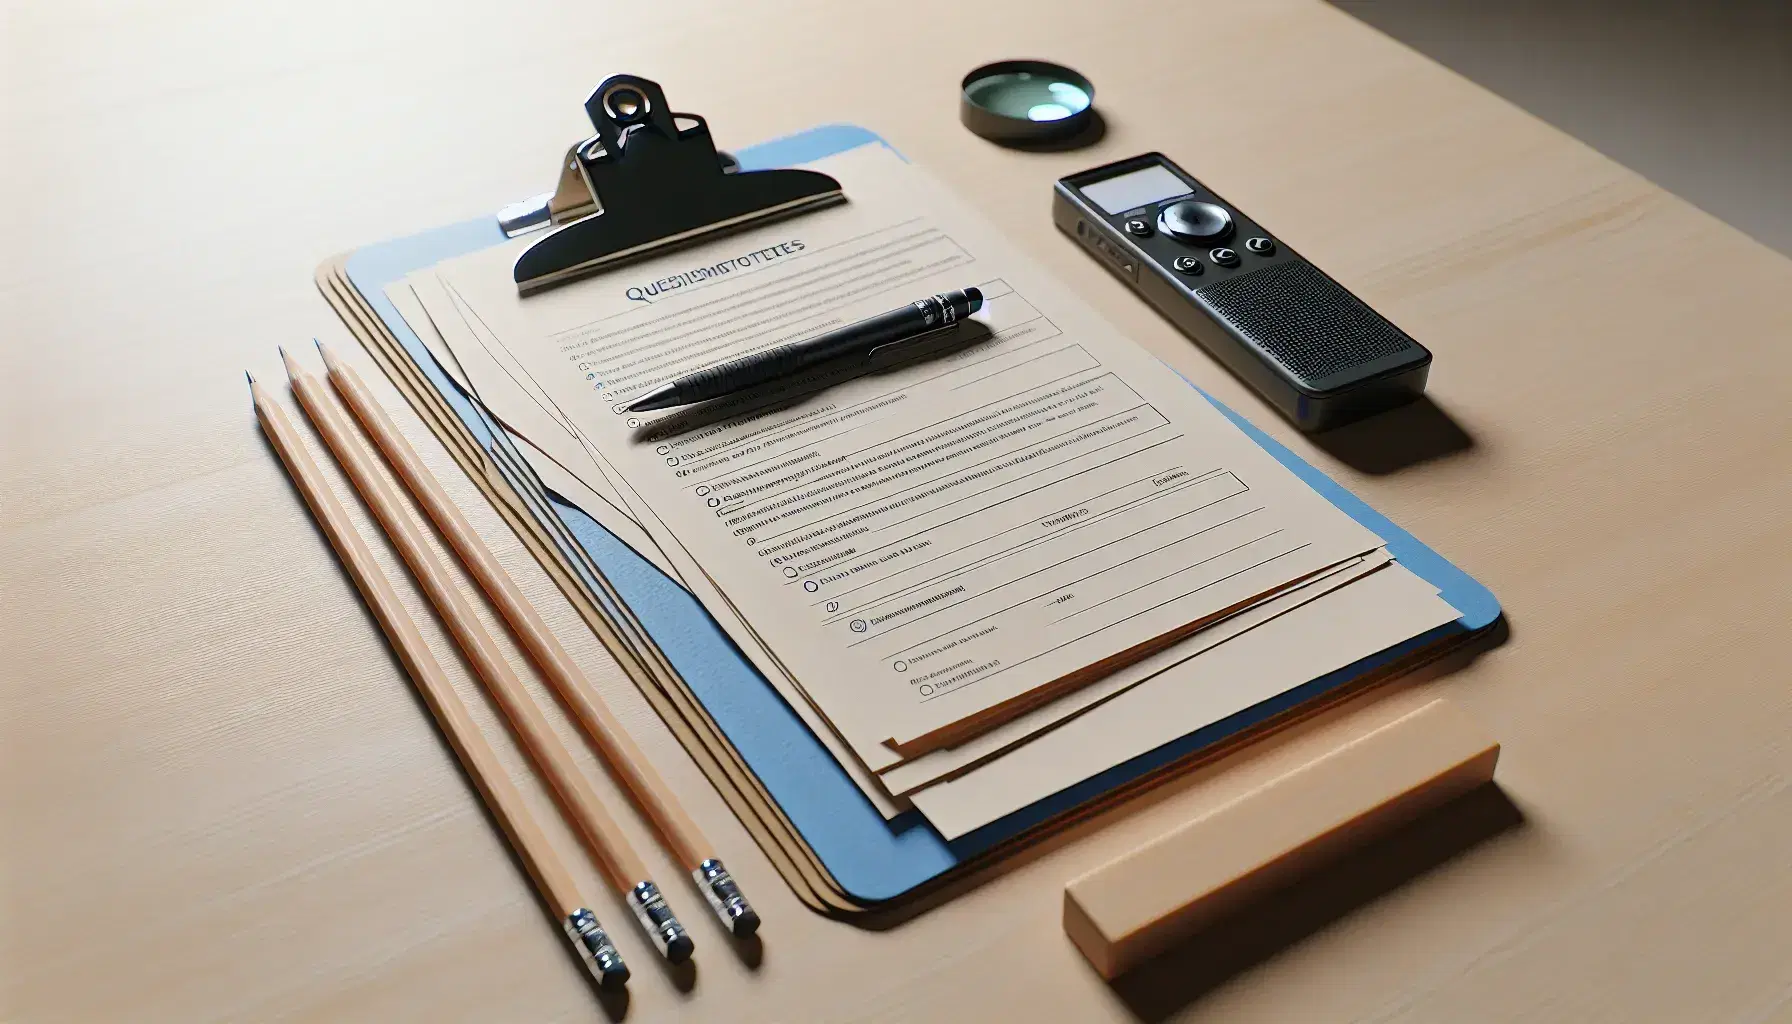 Mesa de madera clara con cuestionarios impresos, grabadora digital negra, lápices, borrador blanco, portapapeles azul y lupa con mango negro.